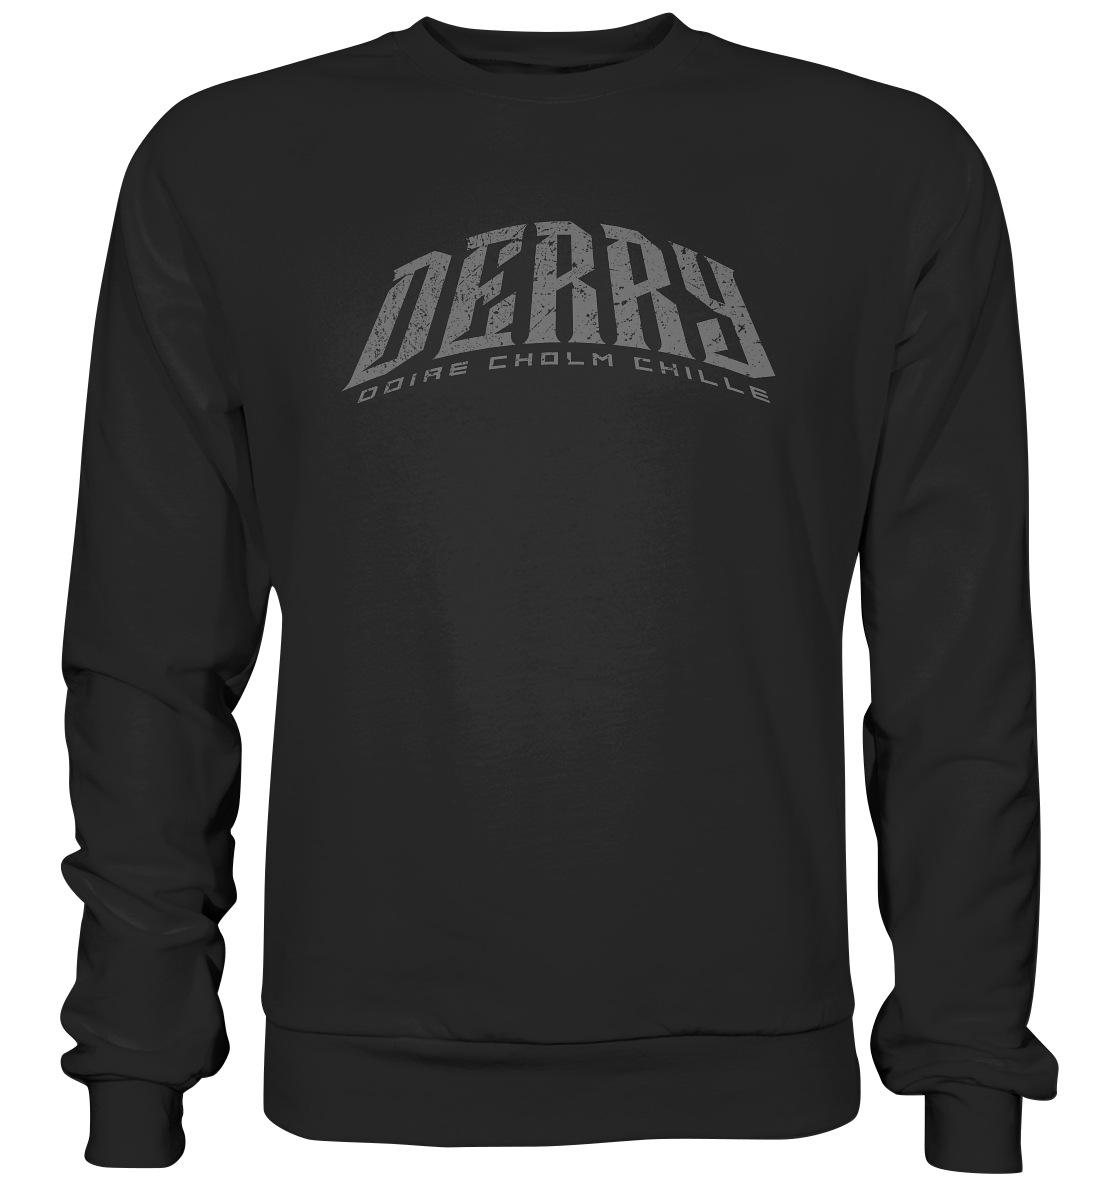 Cities Of Ireland "Derry" - Premium Sweatshirt